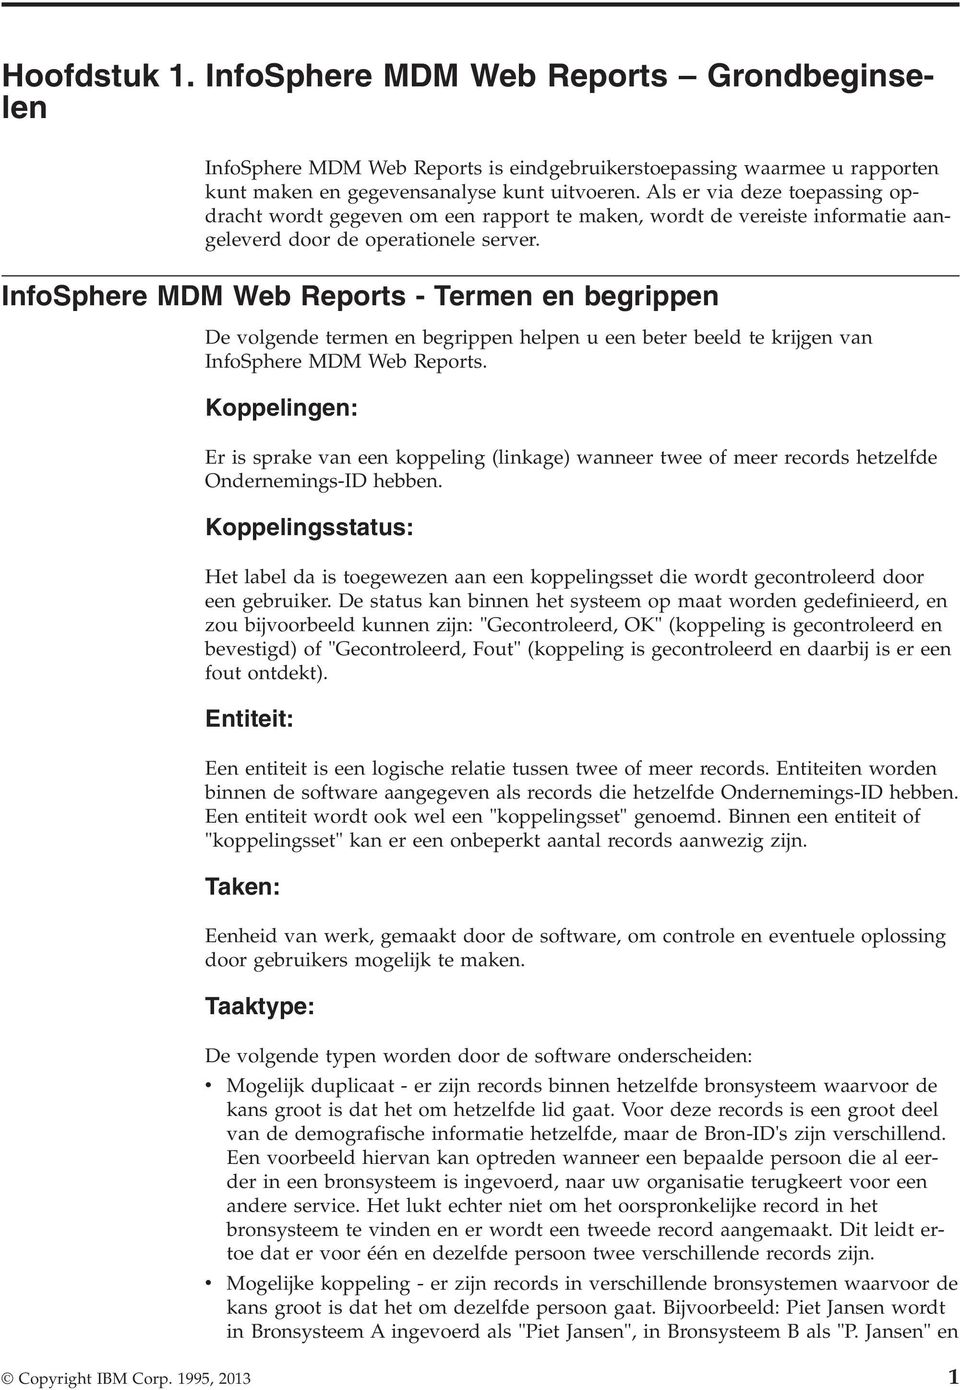 InfoSphere MDM Web Reports - Termen en begrippen De olgende termen en begrippen helpen u een beter beeld te krijgen an InfoSphere MDM Web Reports.